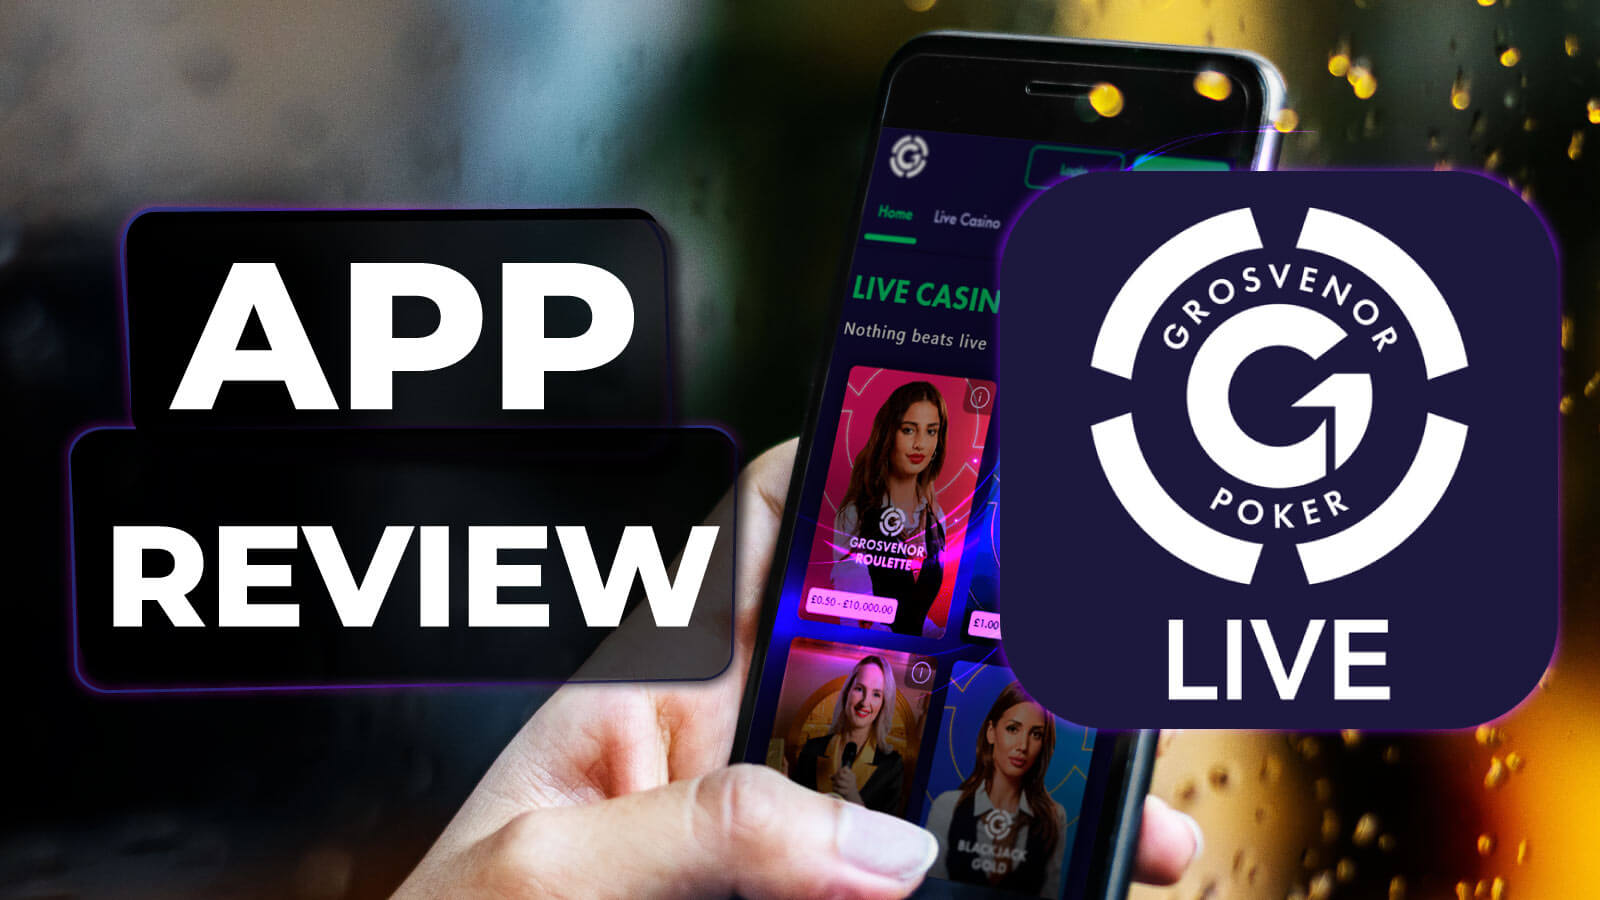 grosvenor-casino-app-review